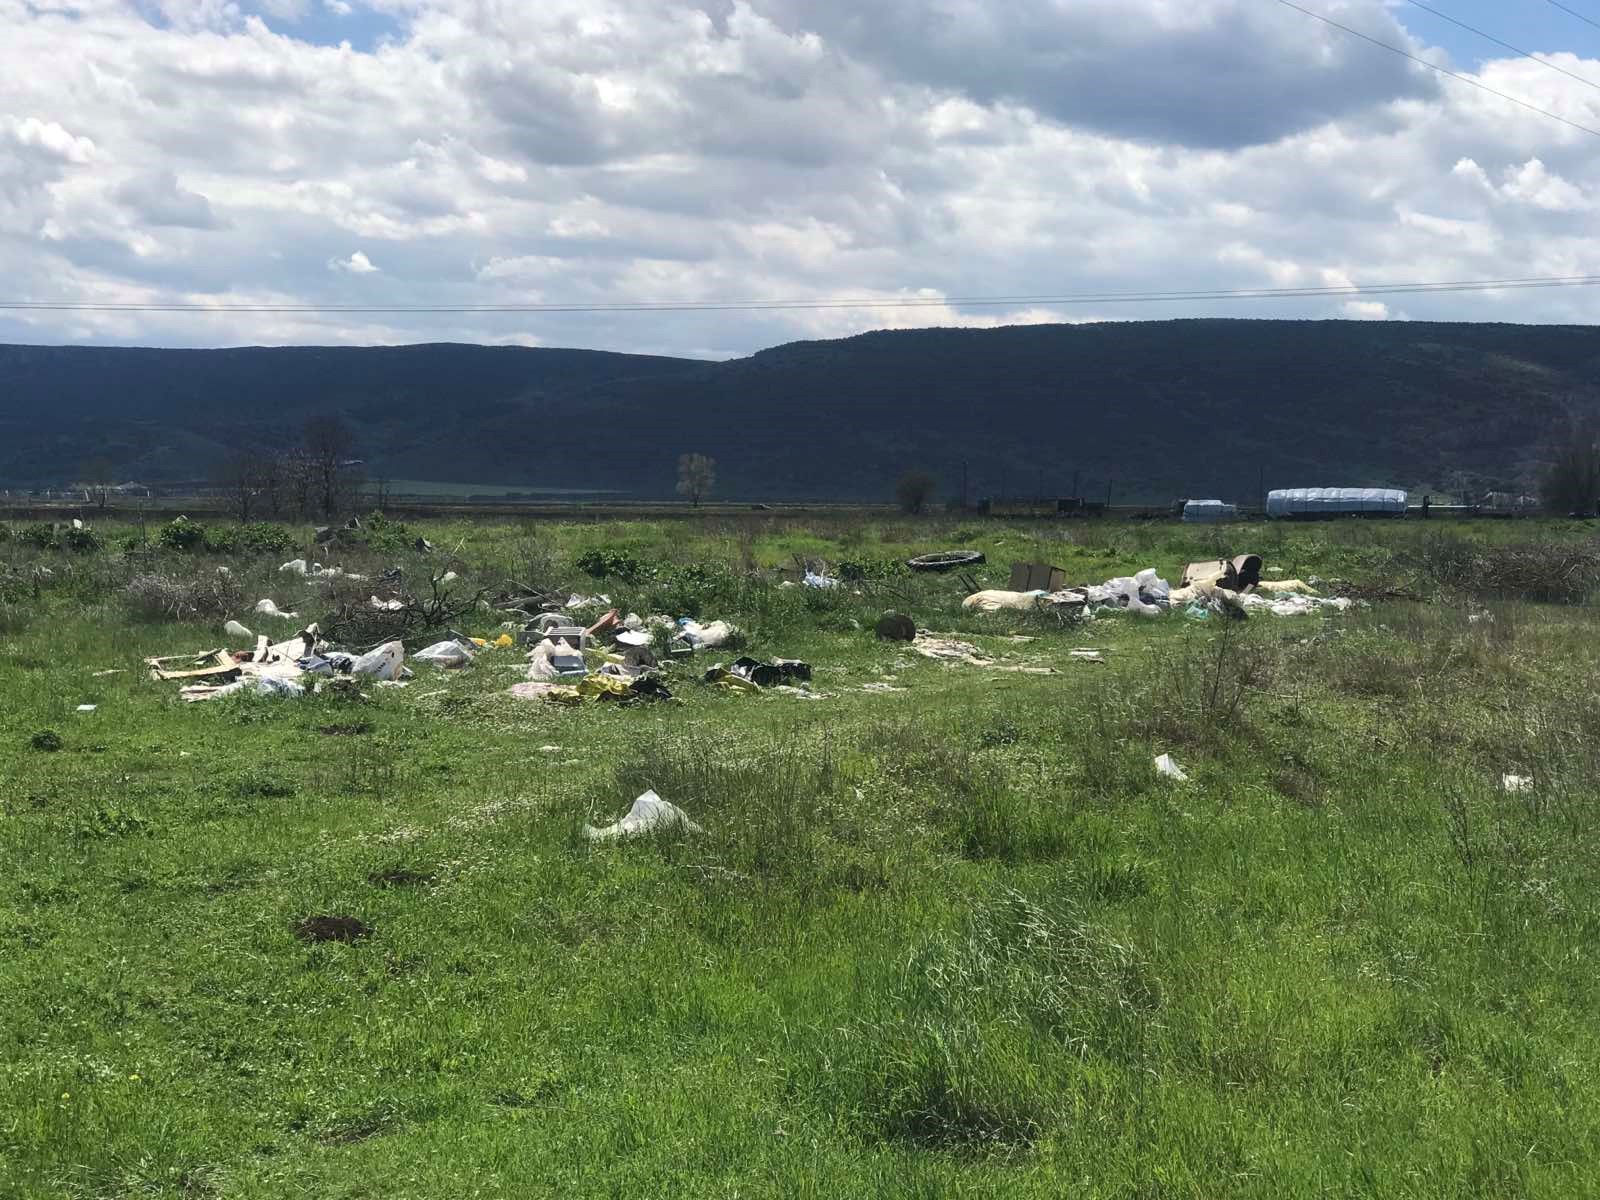 Ασυνείδητοι μολύνουν με σκουπίδια περιοχές στα Φάρσαλα